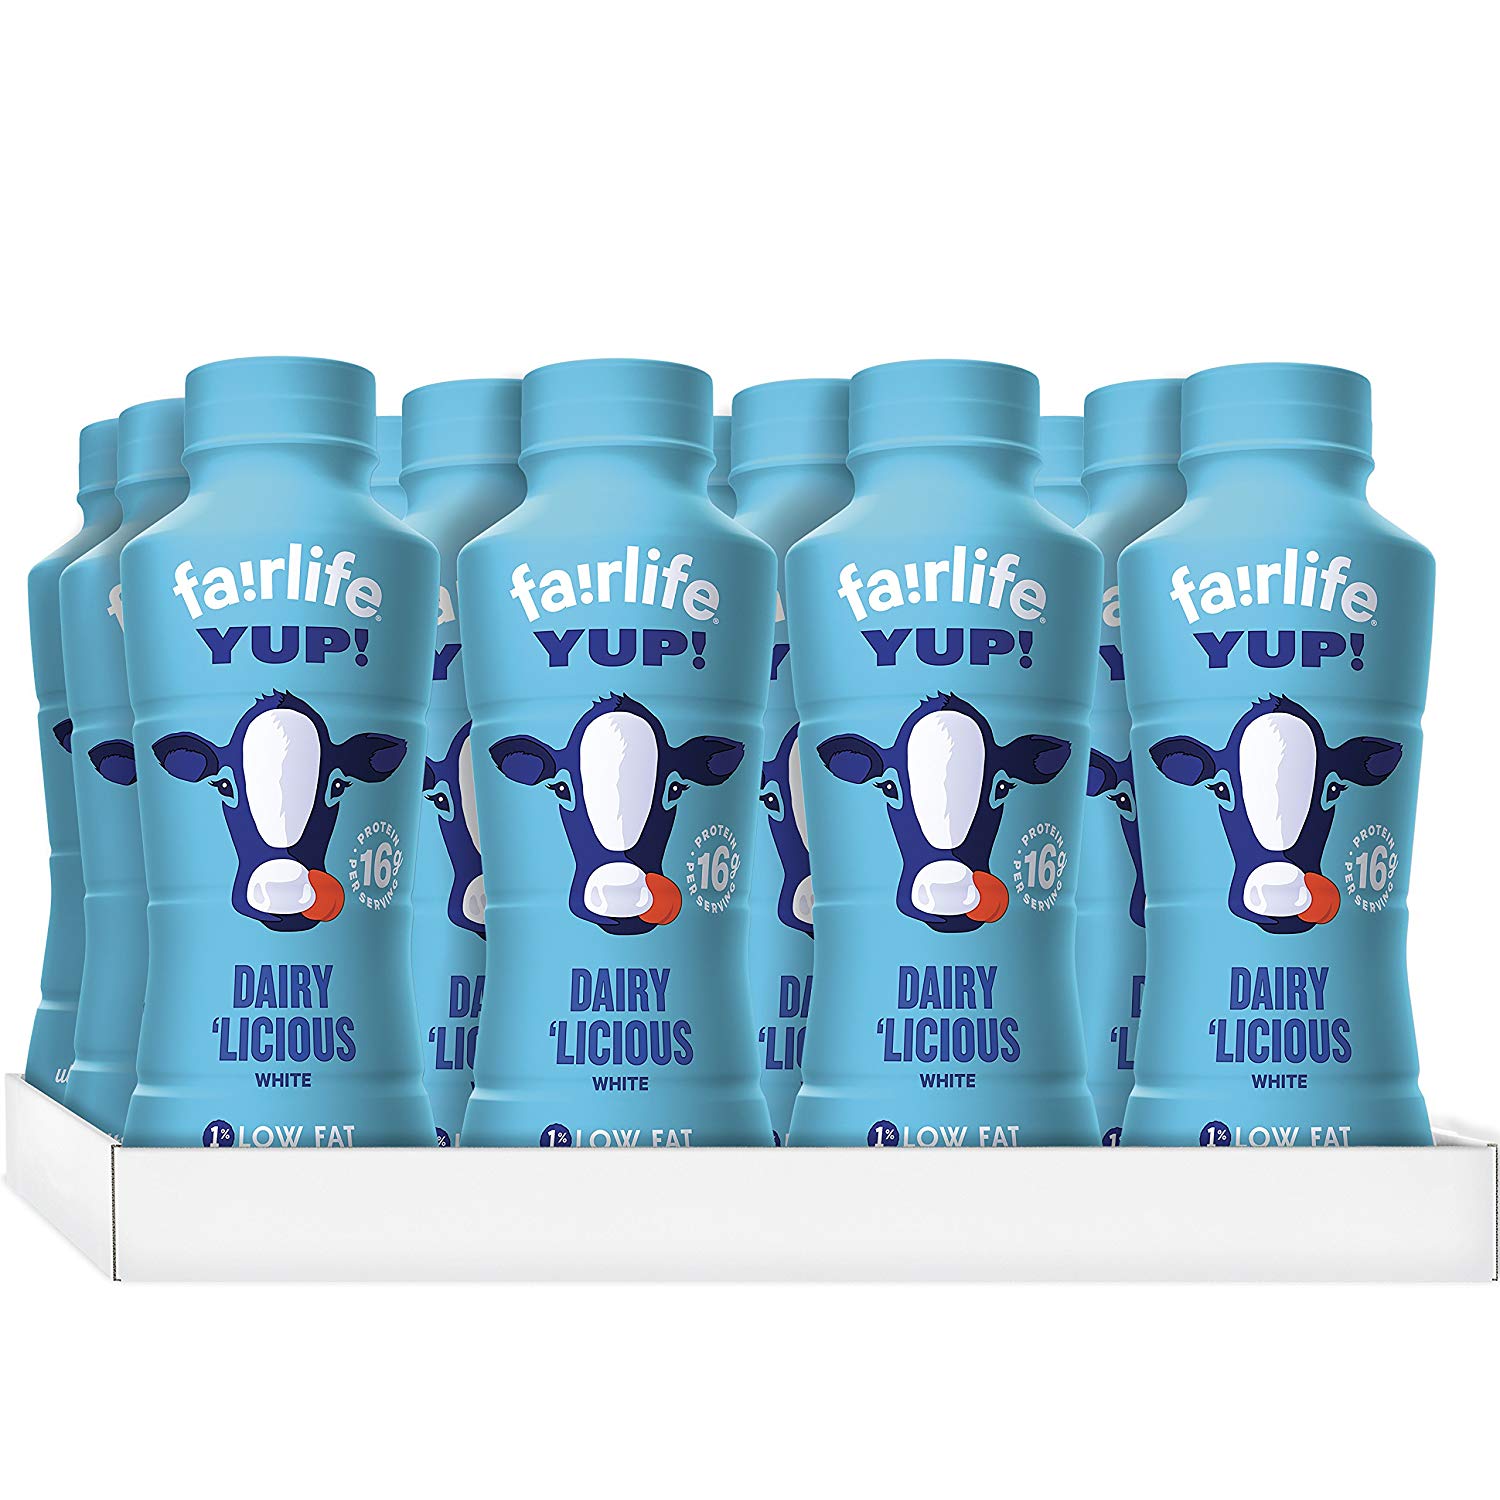 fairlife YUP! 1%低脂无乳糖牛奶 14Oz 12瓶